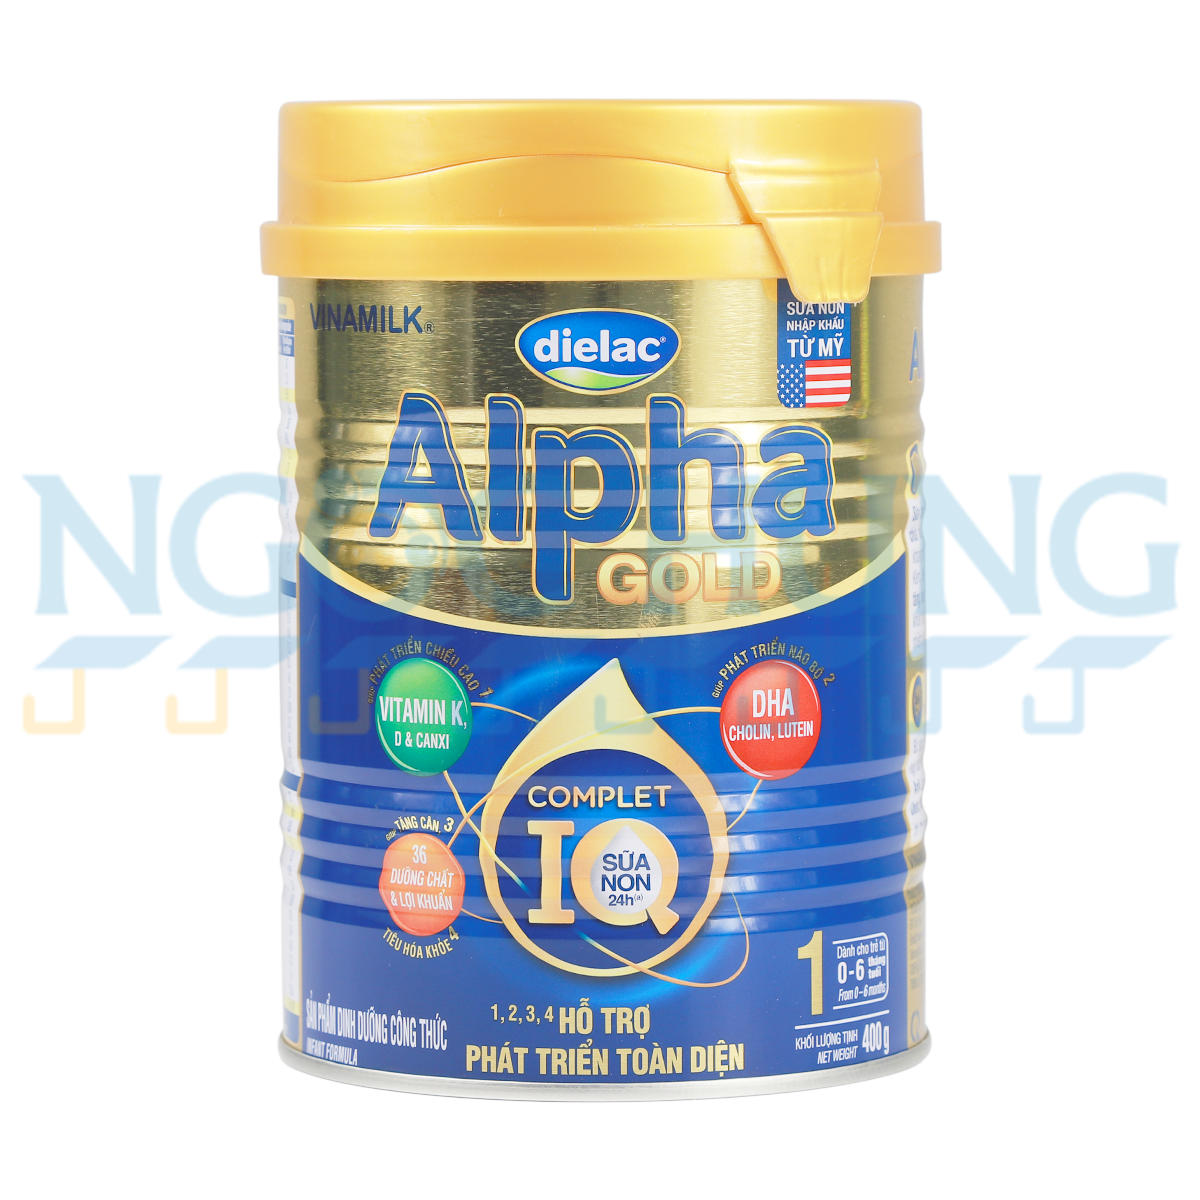 Sữa bột  Vinamilk Dielac Alpha IQ Gold 1 sữa non 400g